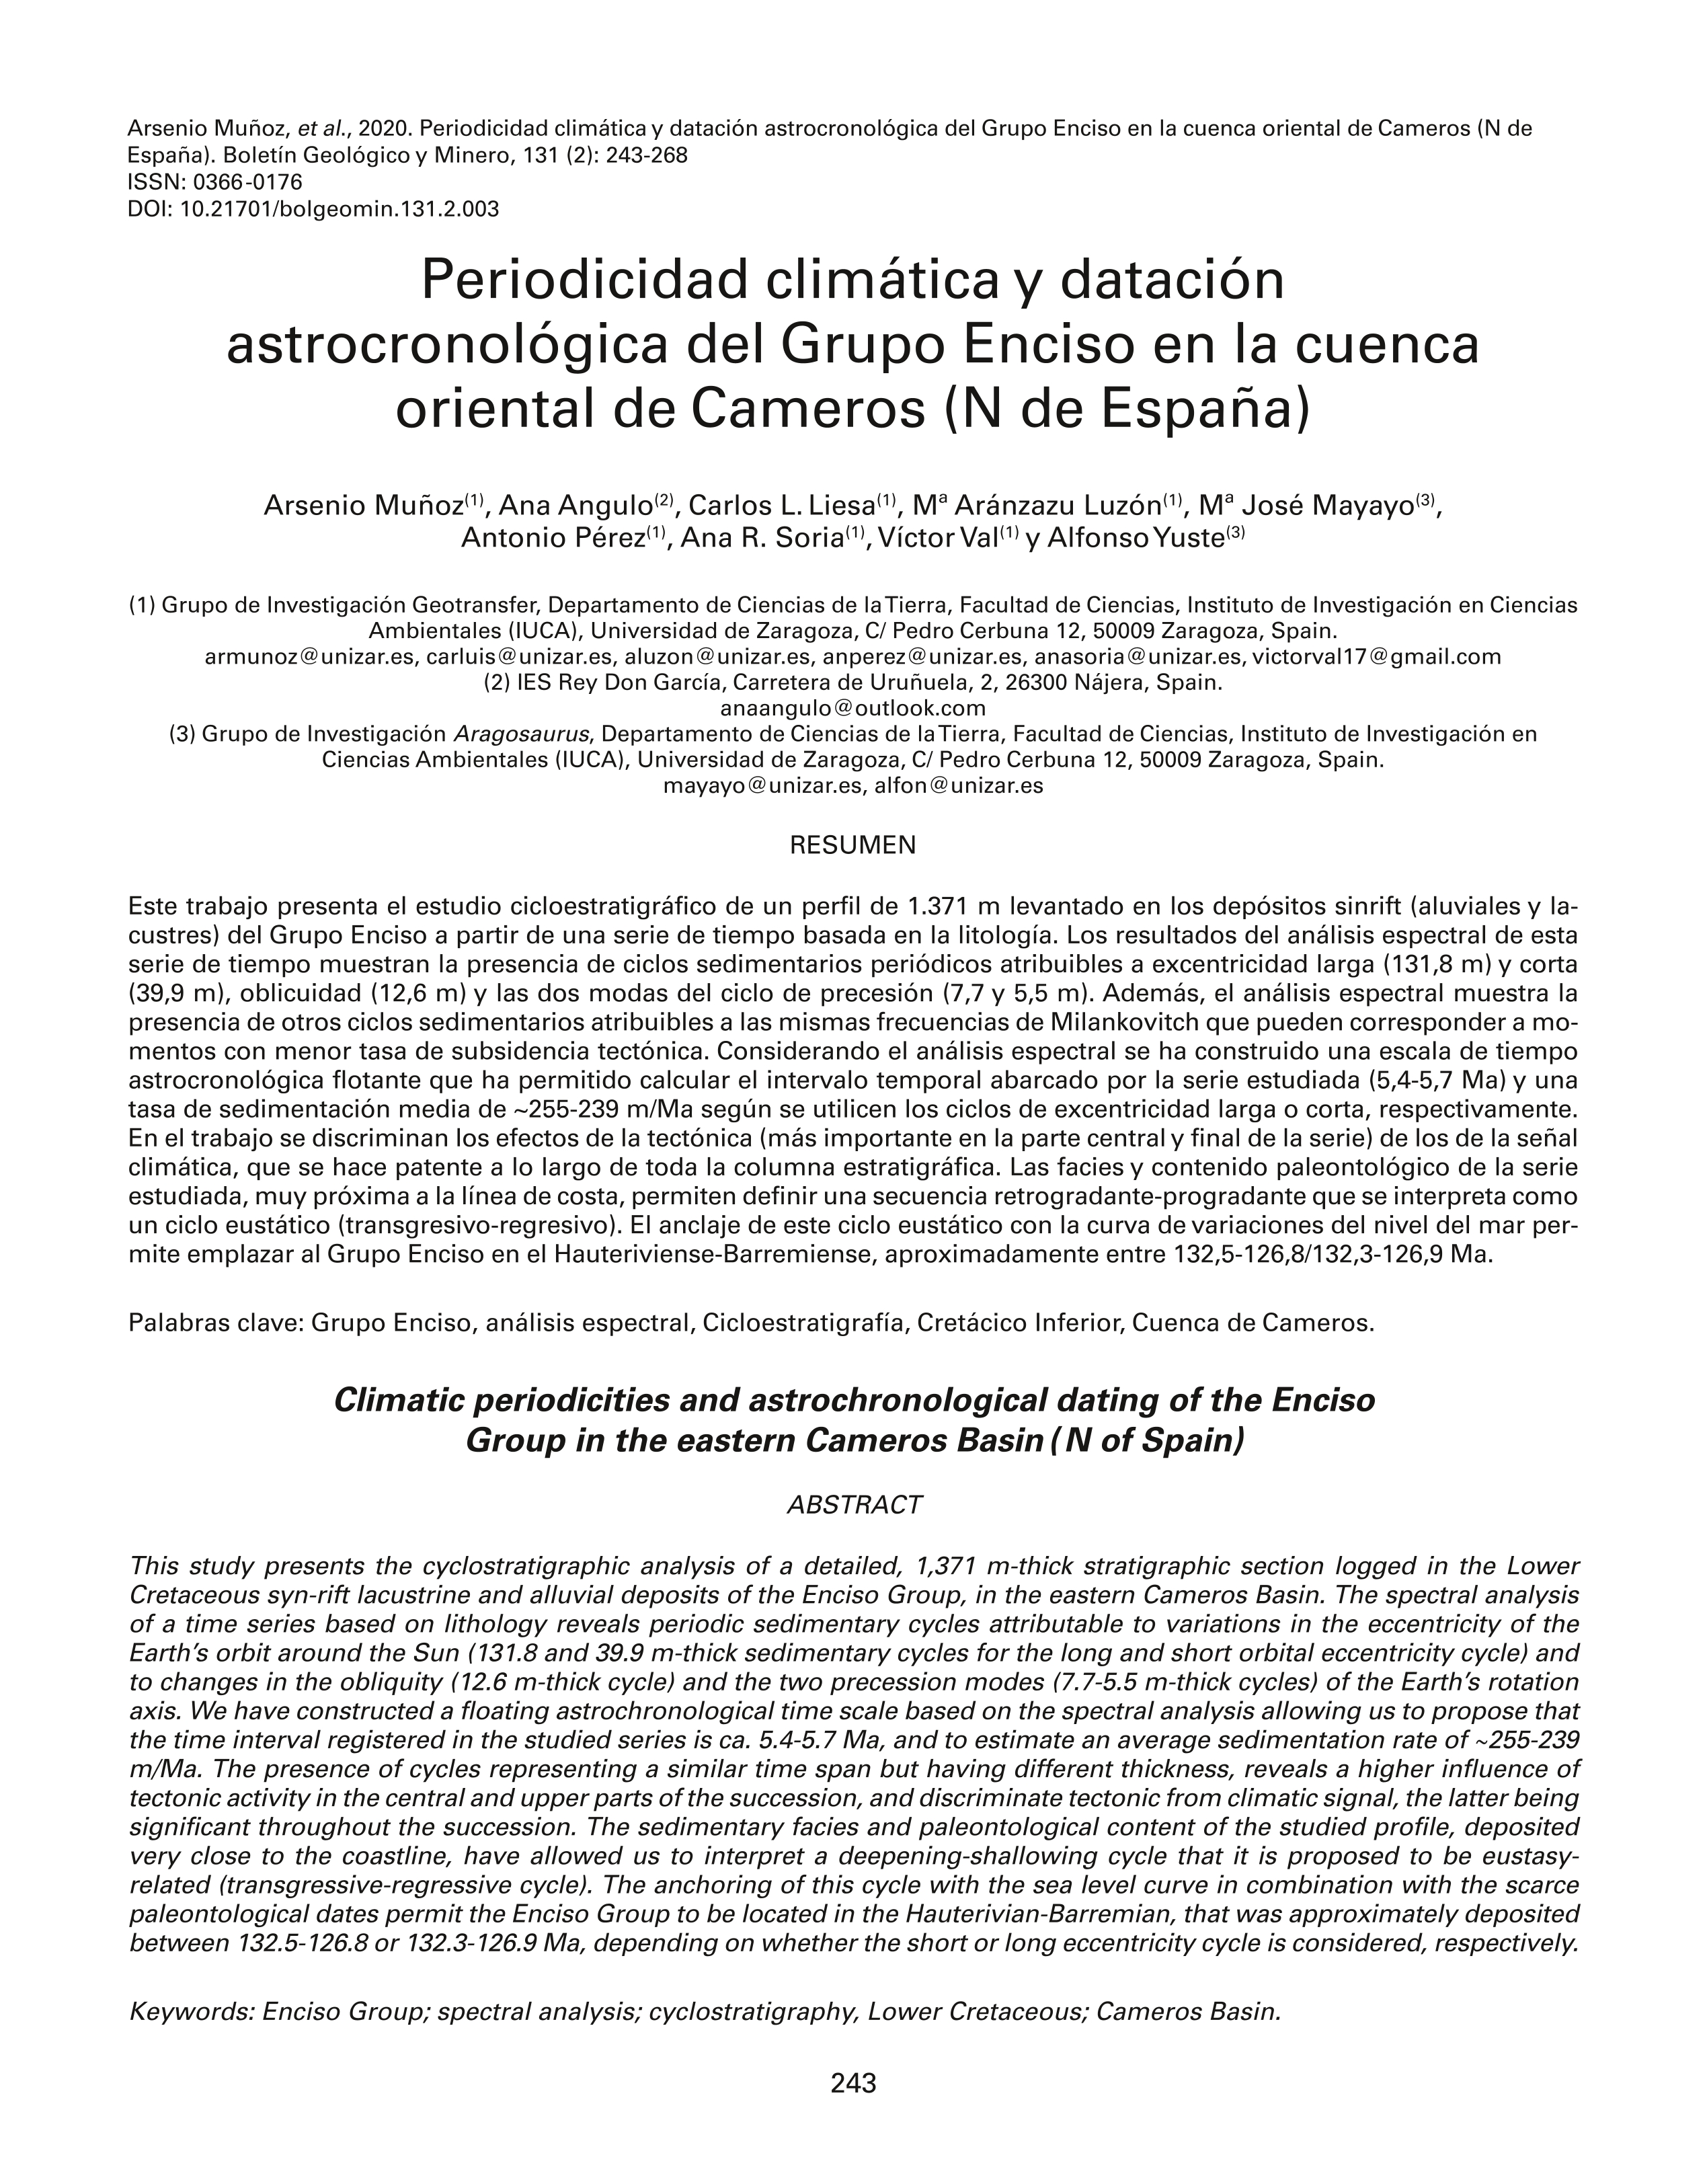 Periodicidad climática y datación astrocronológica del Grupo Enciso en la cuenca oriental de Cameros (N de España)